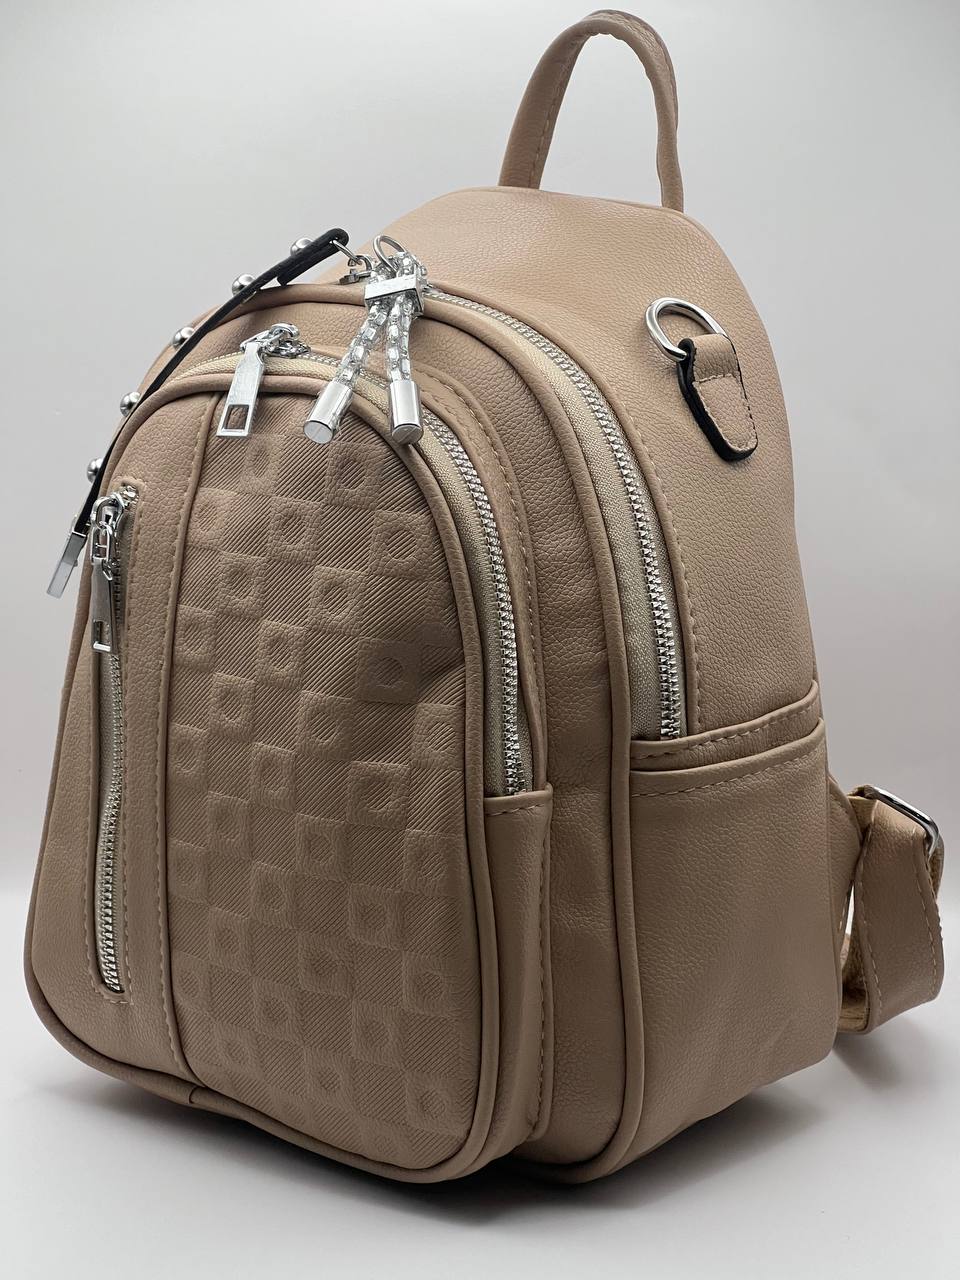 Сумка-рюкзак женская SunGold Р-92001 бежевая, 27х22х12 см